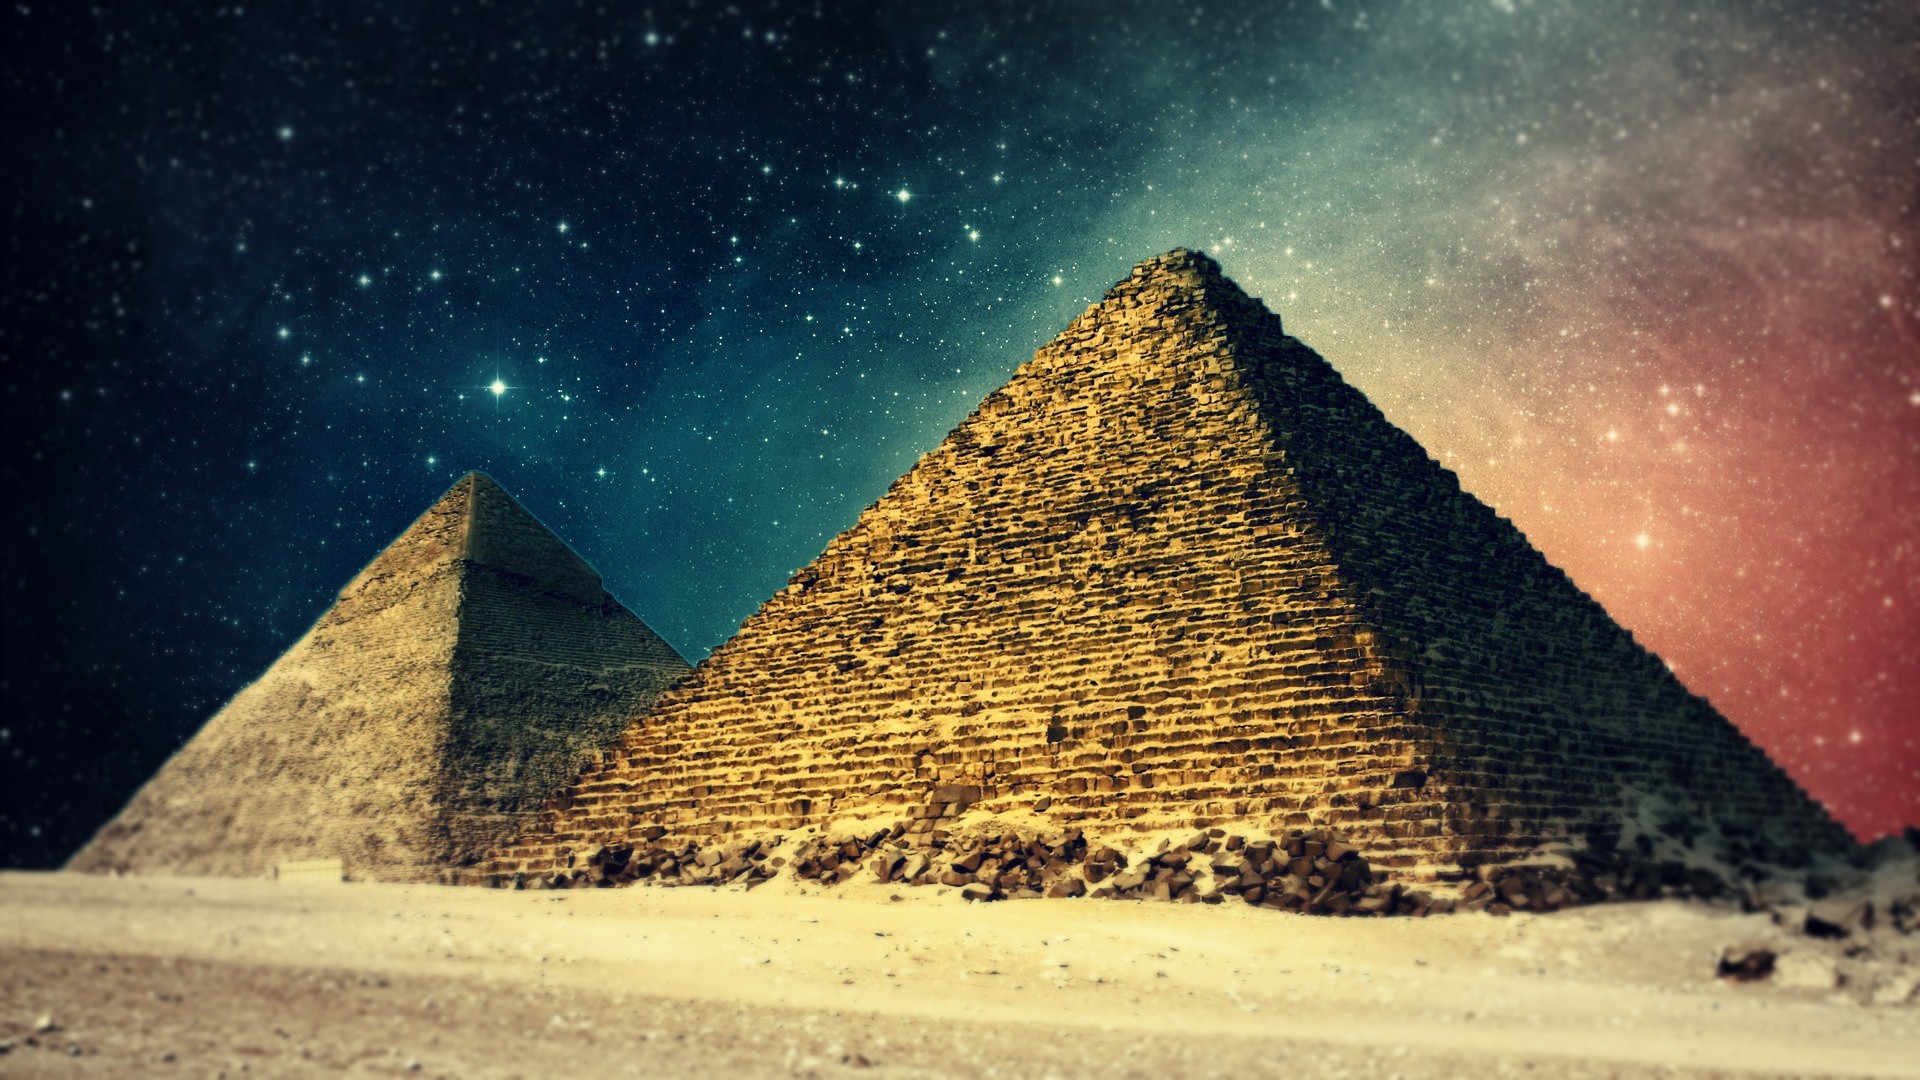 landscapes, Egypt, Digital, Art, Pyramids, Night, Sky Wallpaper